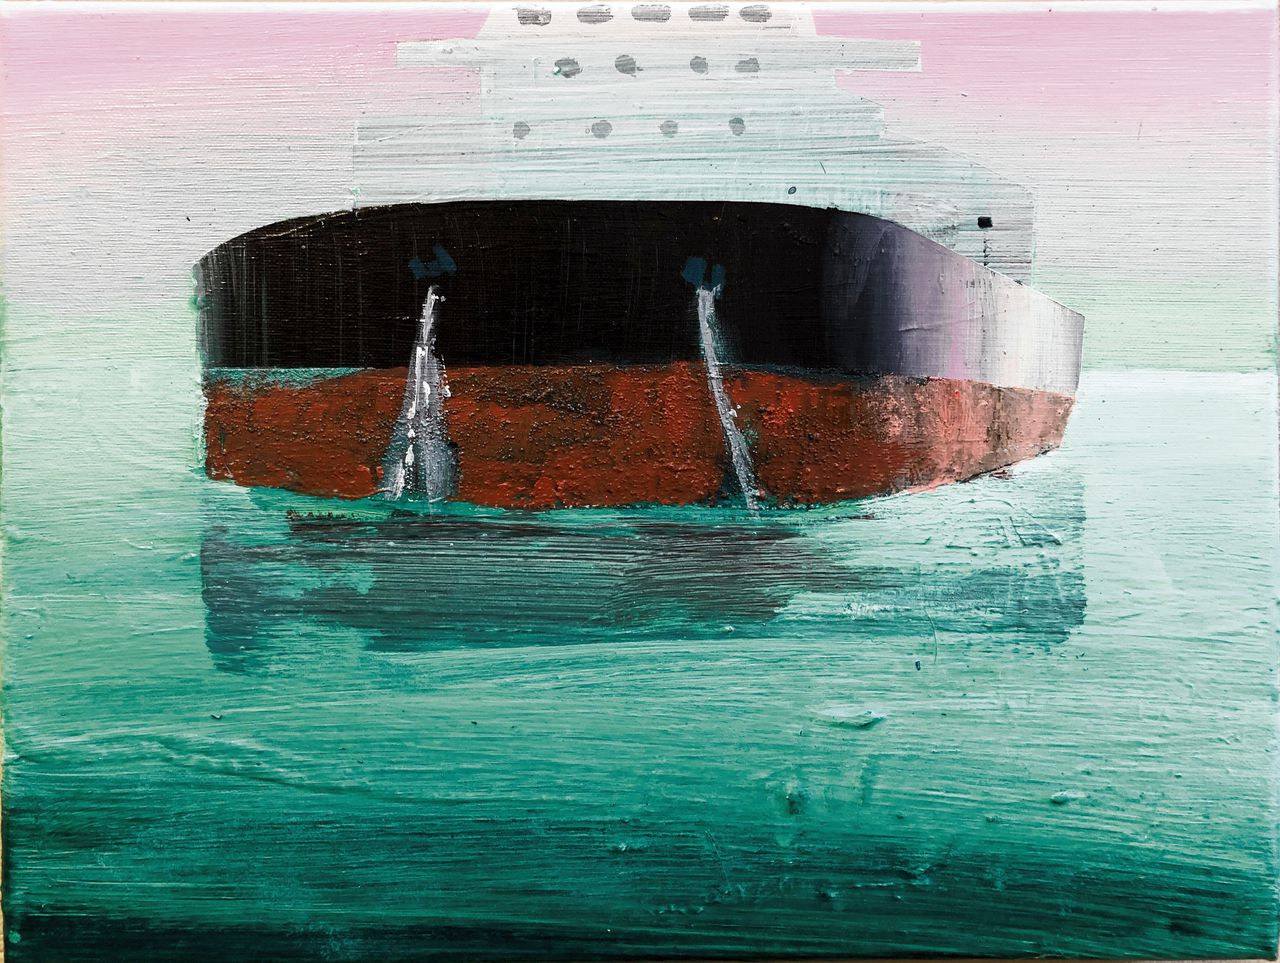 Sasja Hagens schildert al 25 jaar de havens in Rotterdam: ‘Ik wil laten zien hoe kleurrijk havenlandschappen zijn’ 